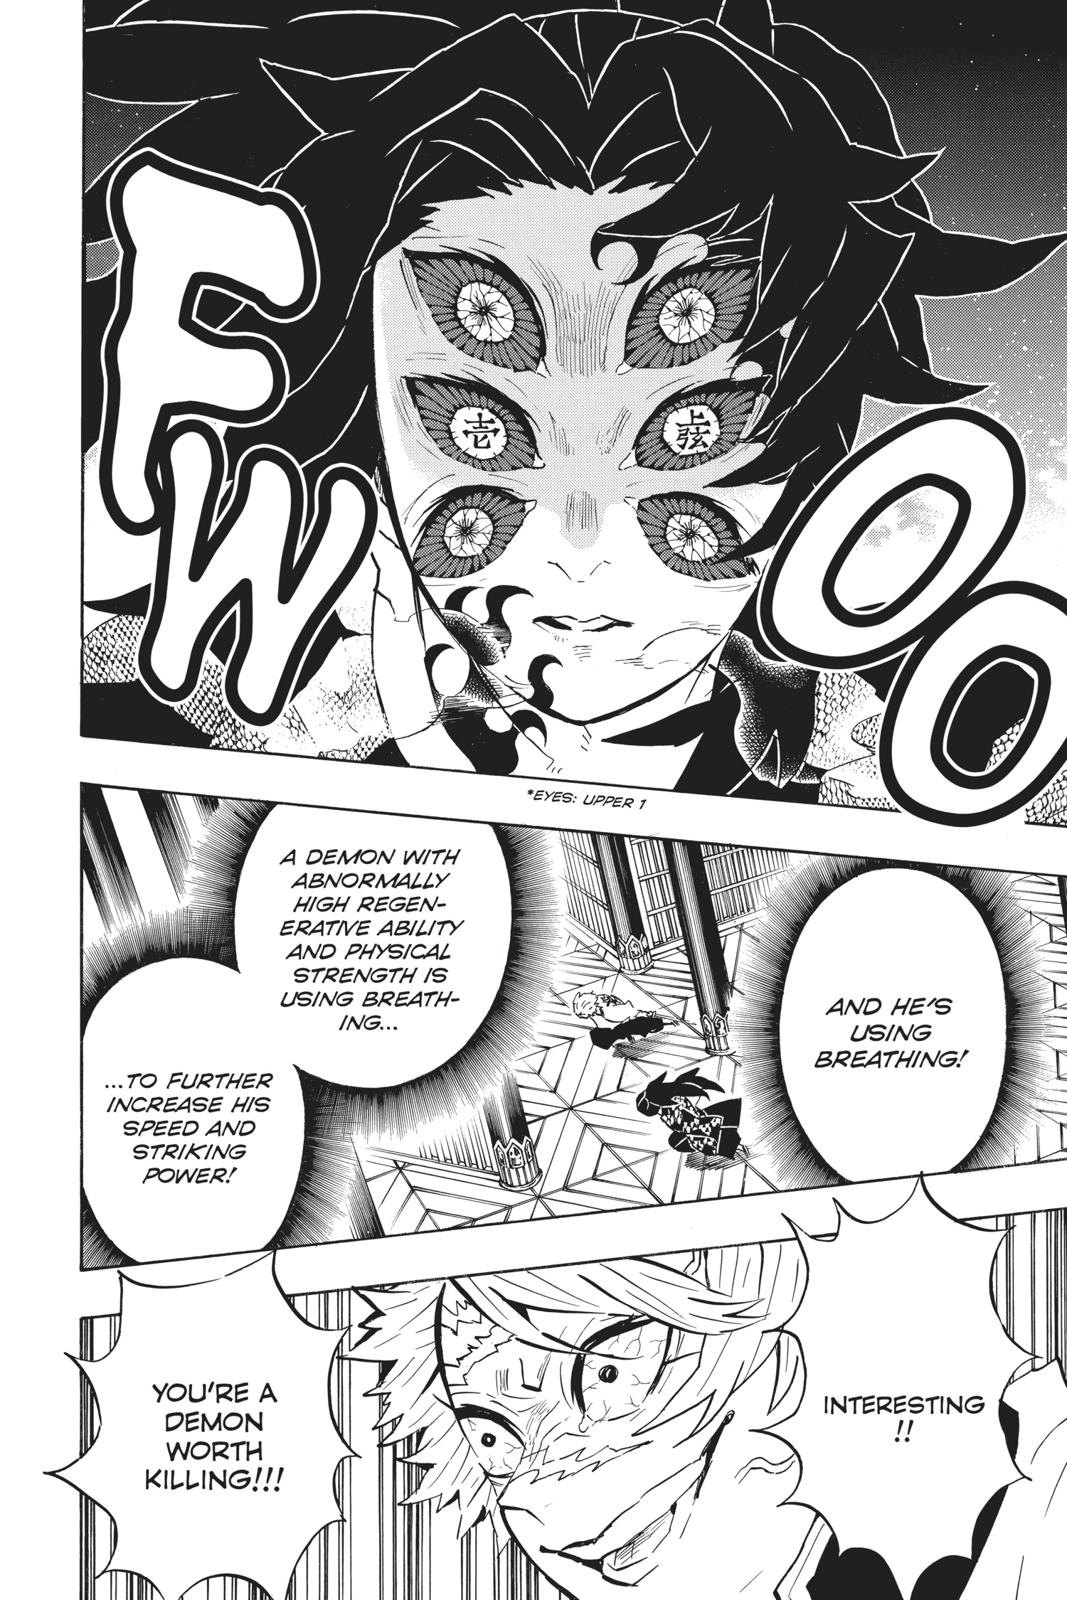 Demon Slayer Manga Manga Chapter - 167 - image 6